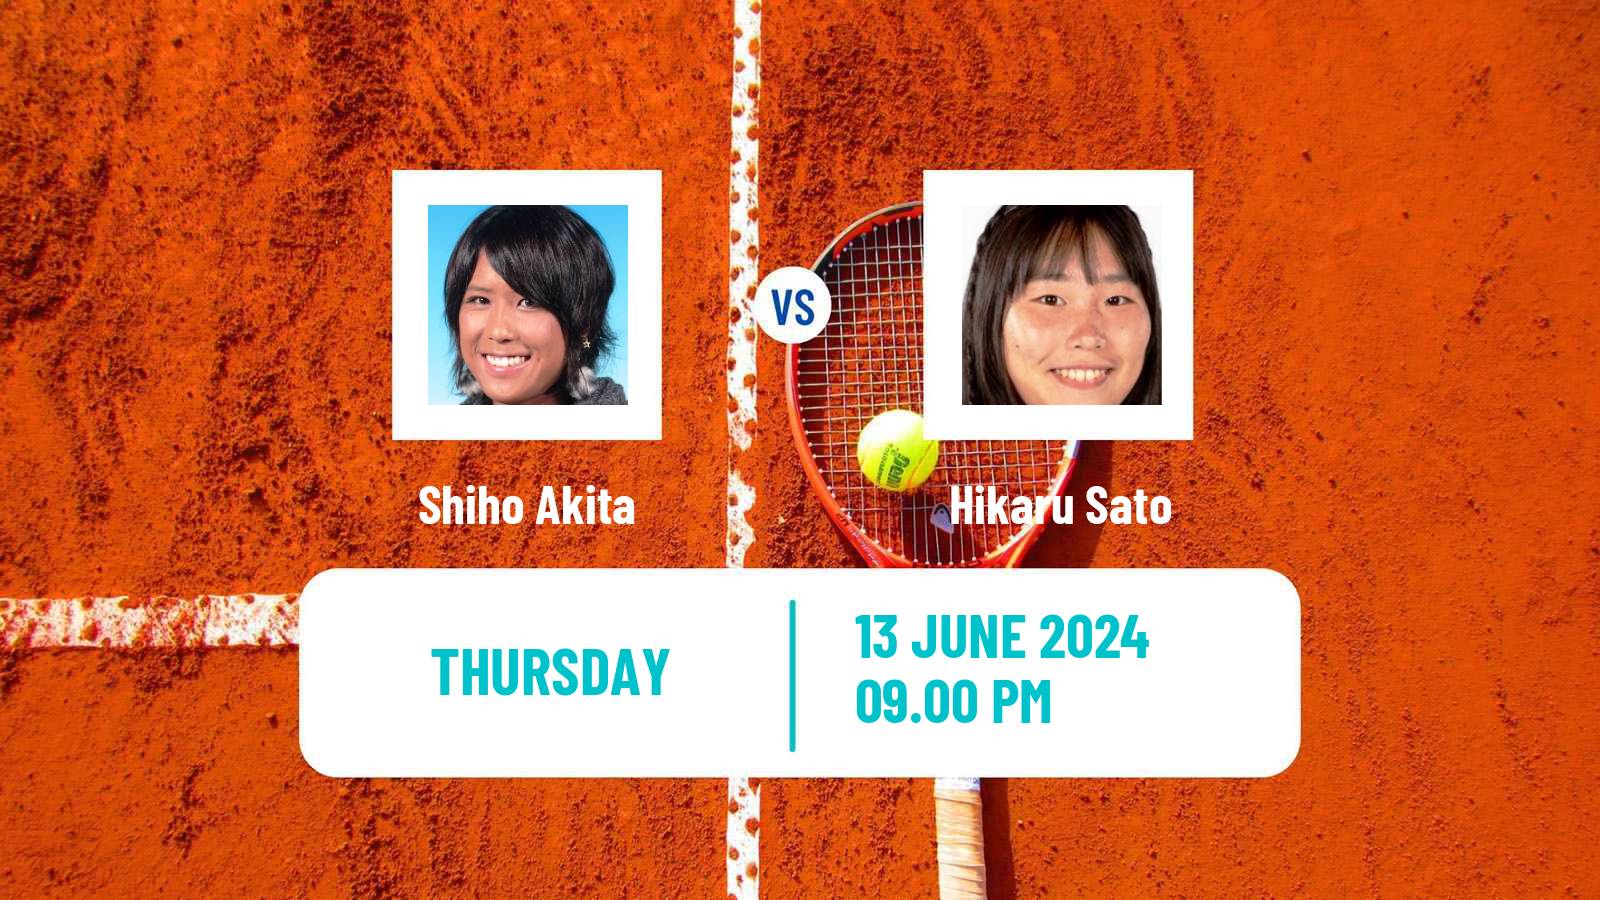 Tennis ITF W15 Tokyo 2 Women Shiho Akita - Hikaru Sato